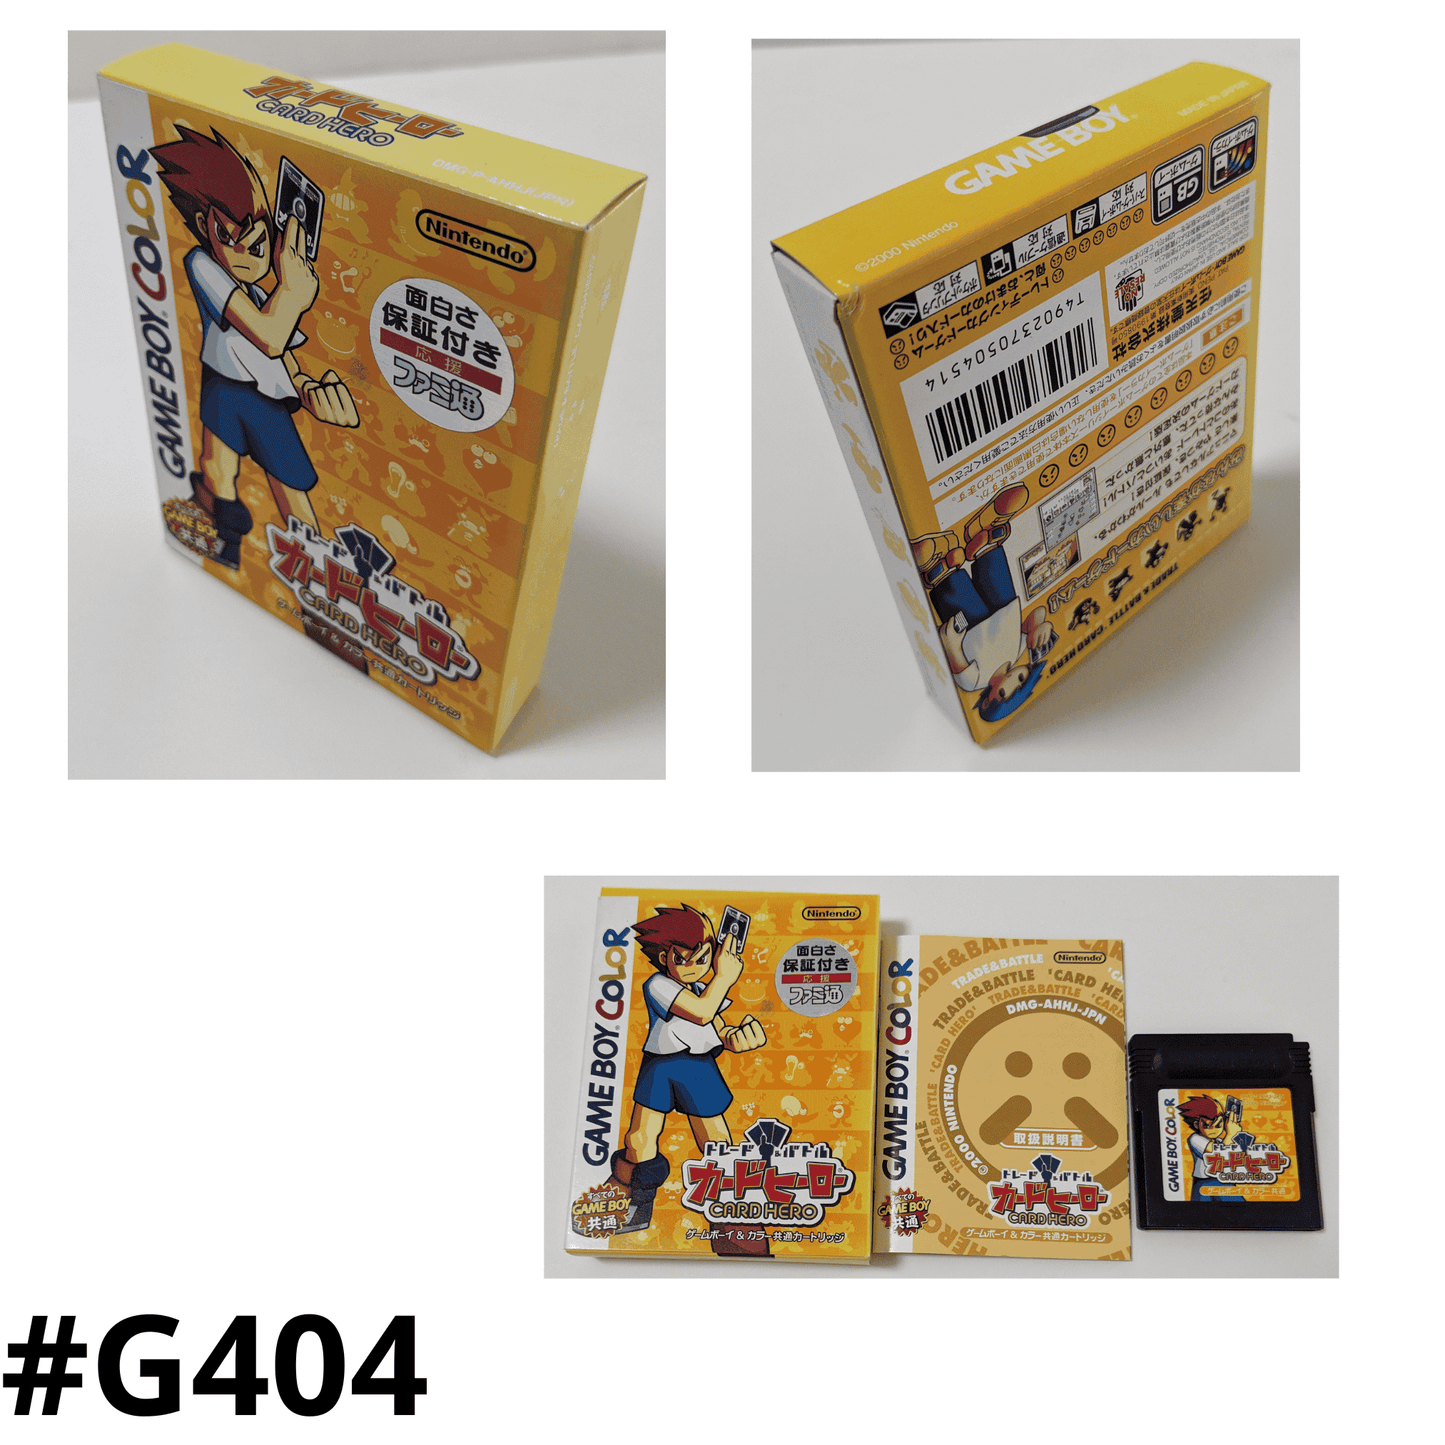 Kartenheld | Game Boy Farbe ChitoroShop